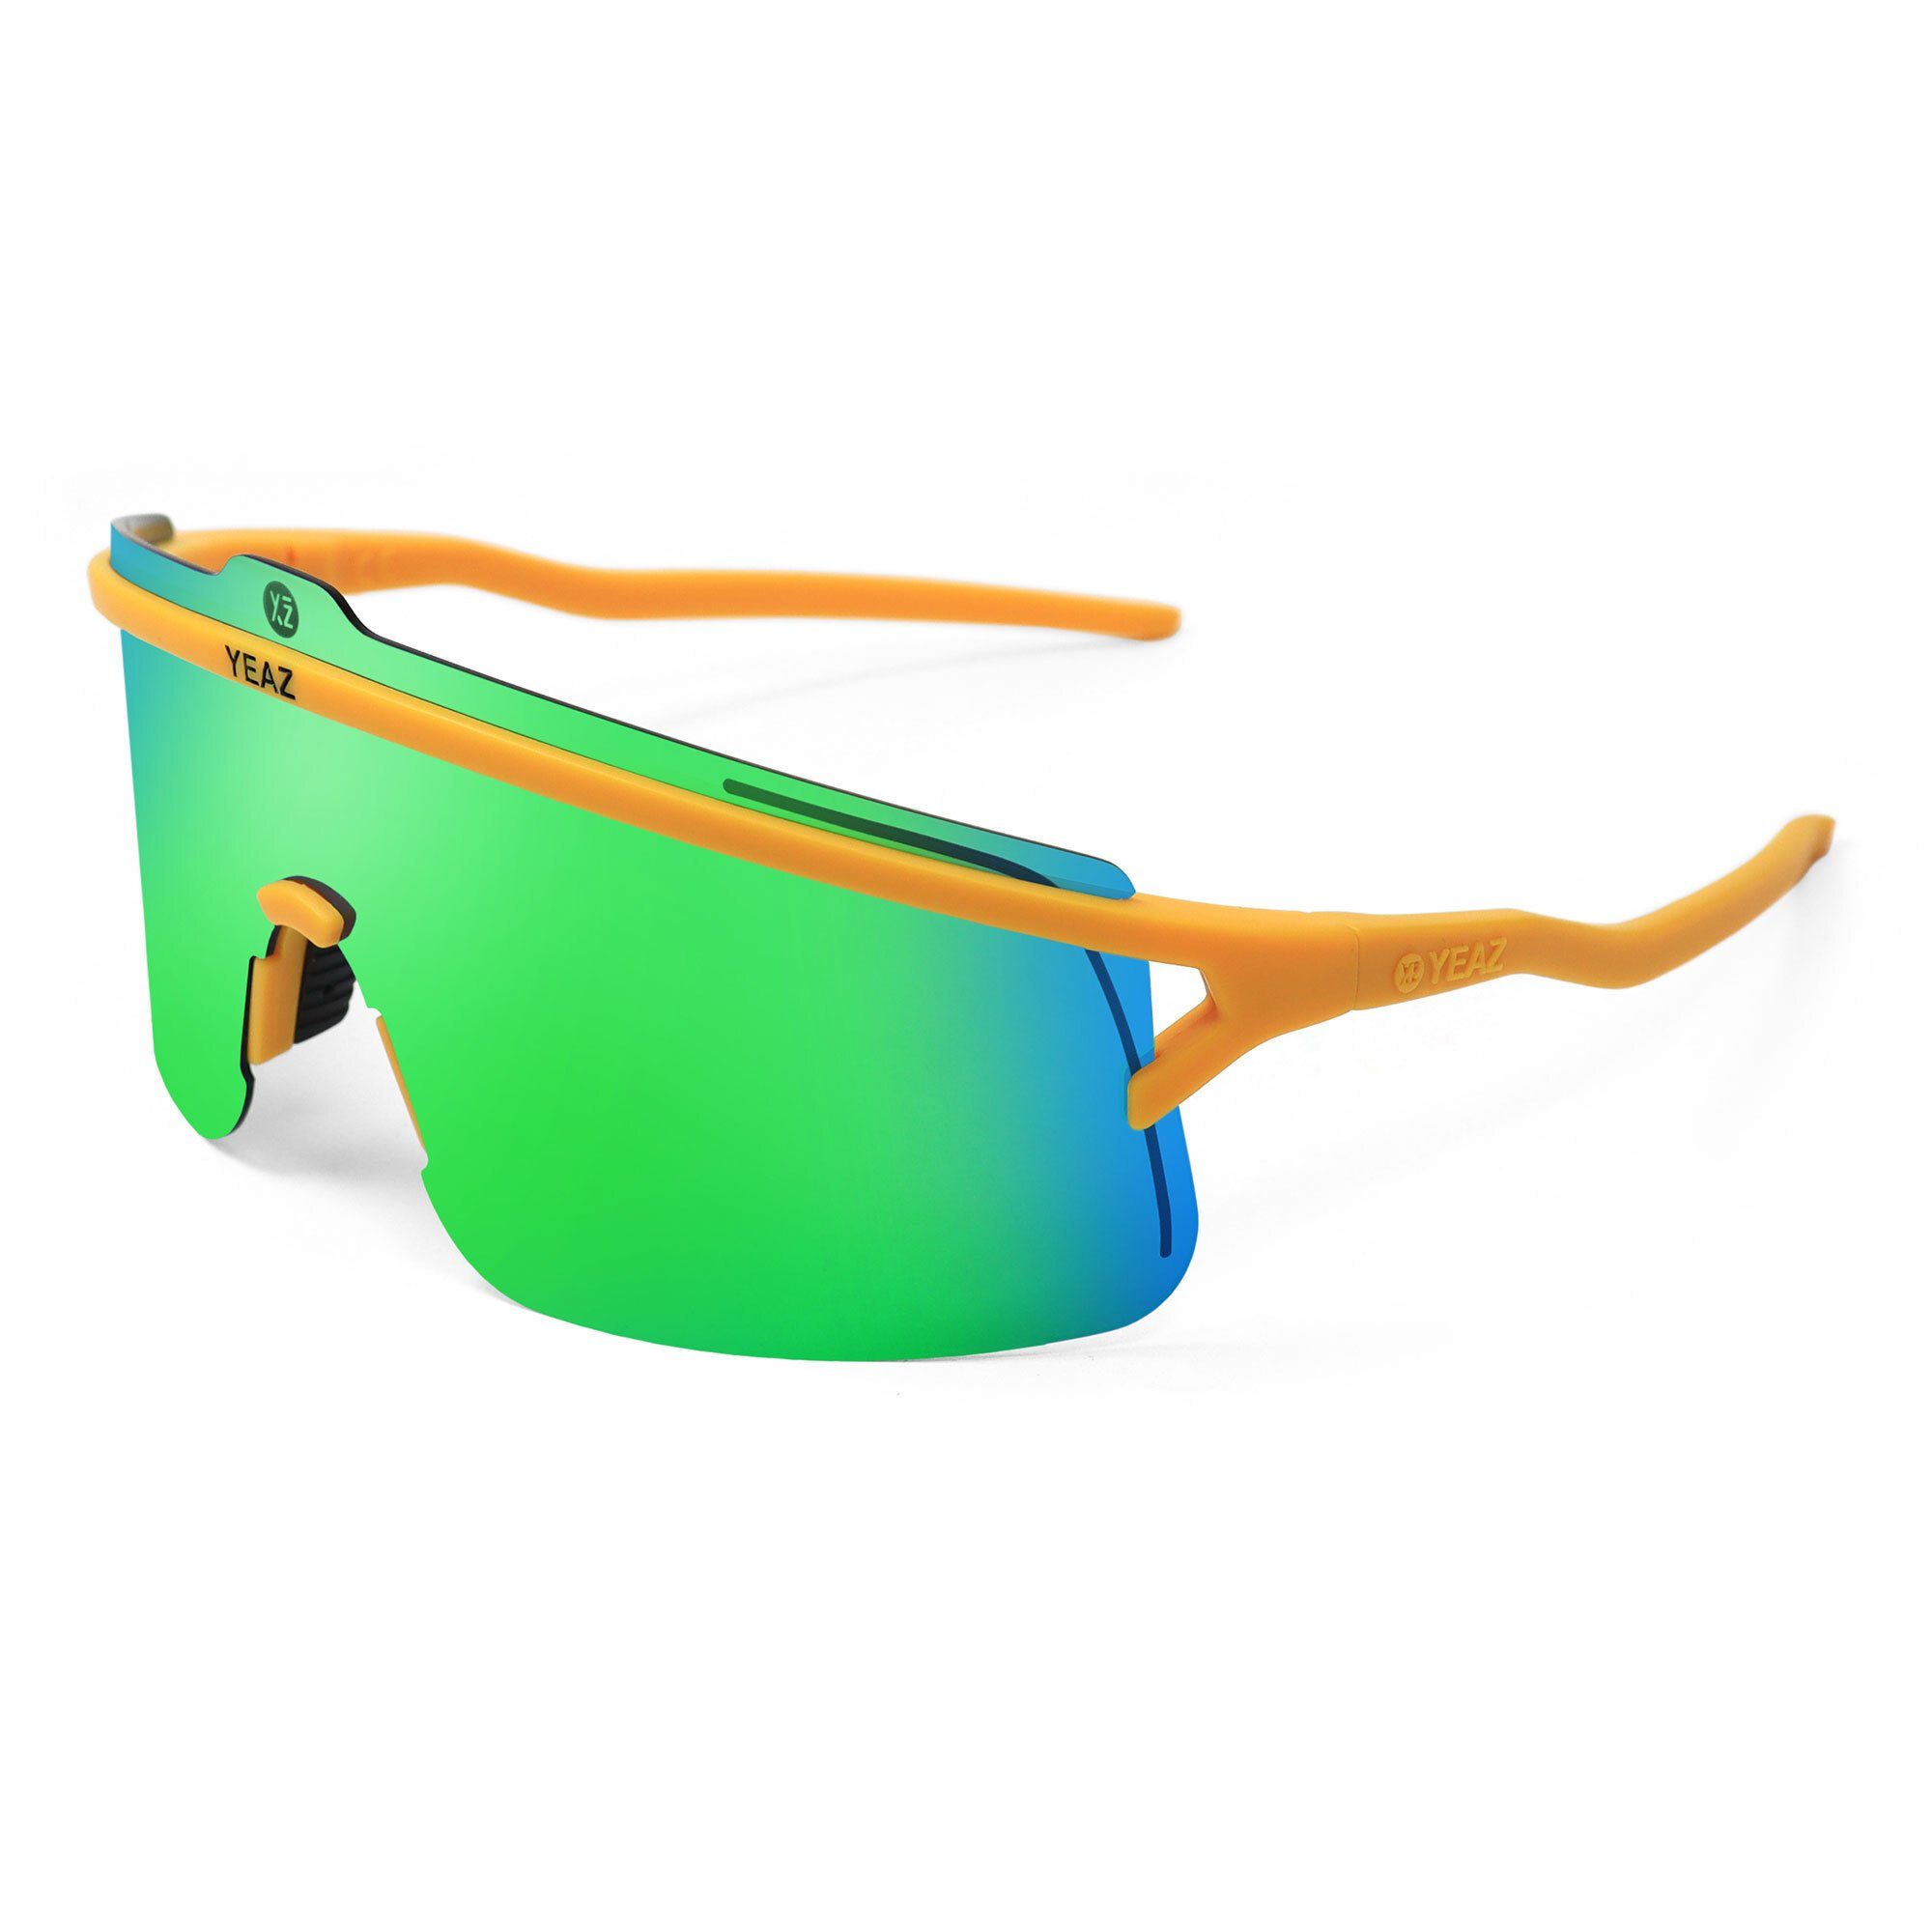 YEAZ Sportbrille SUNSHADE sport-sonnenbrille black/silver, Erlebe perfekte Sicht, Komfort und Style